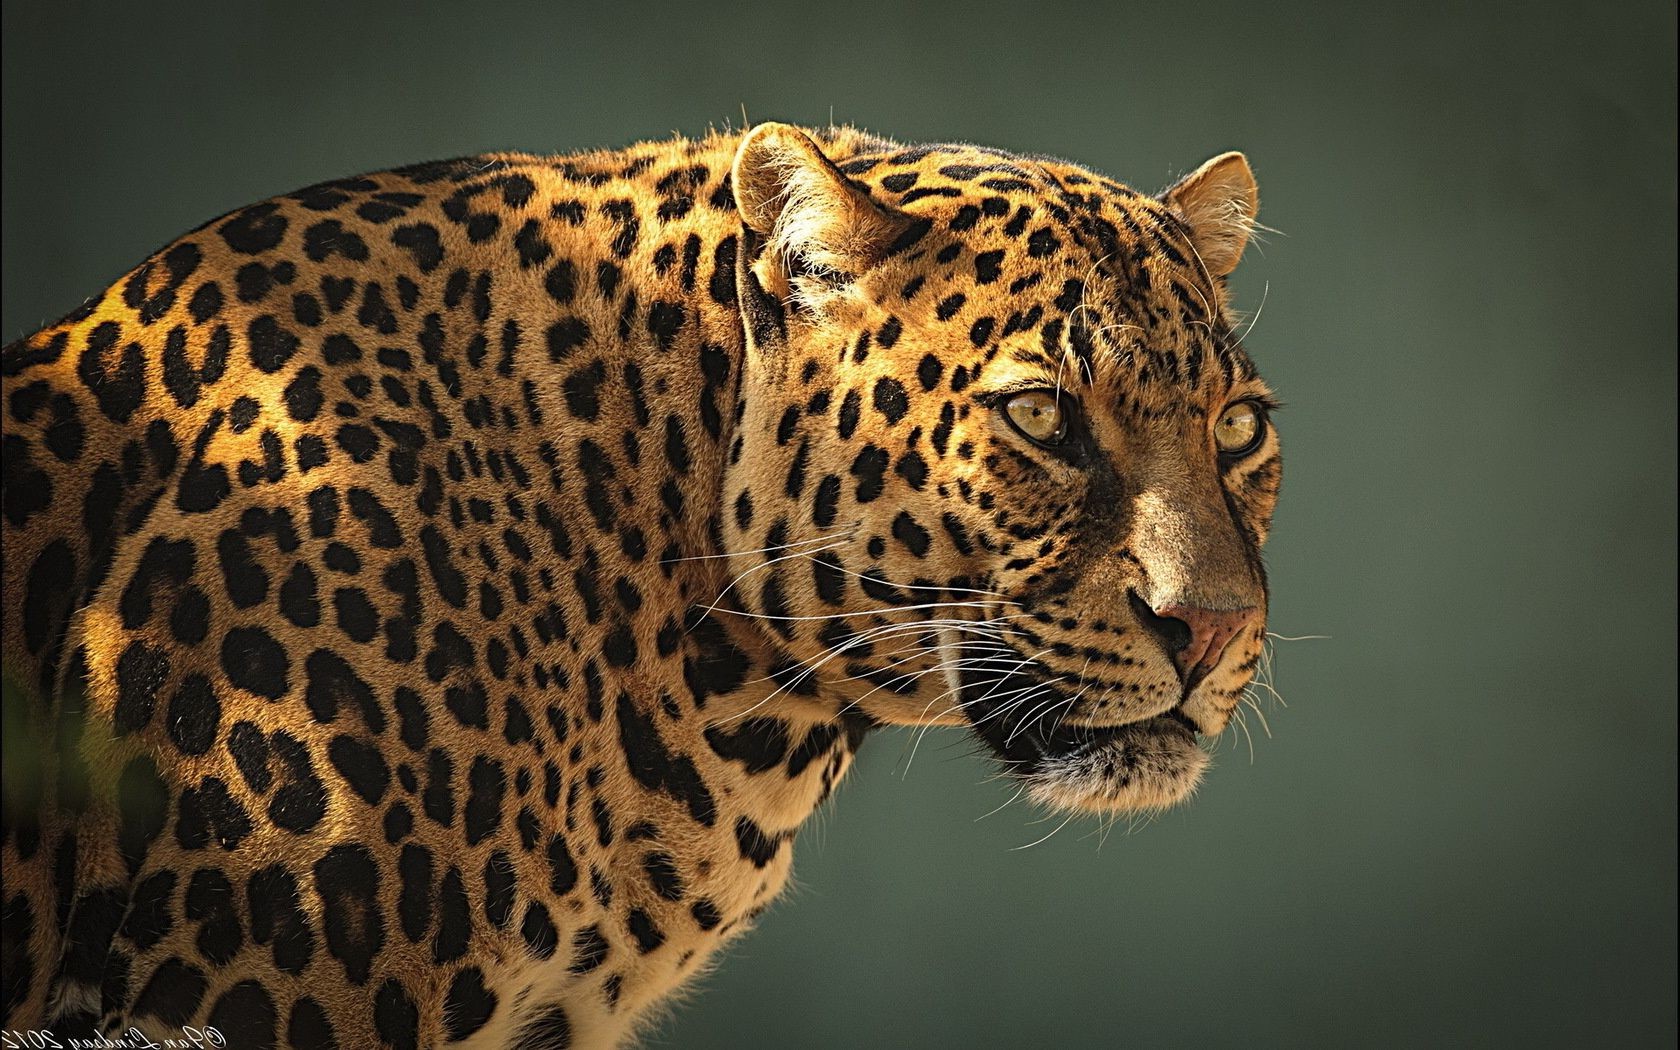 леопарды кошка дикой природы леопард зоопарк хищник животное джунгли млекопитающее сафари охотник тигр большой мех природа мясоед глаз дикий охота пантера